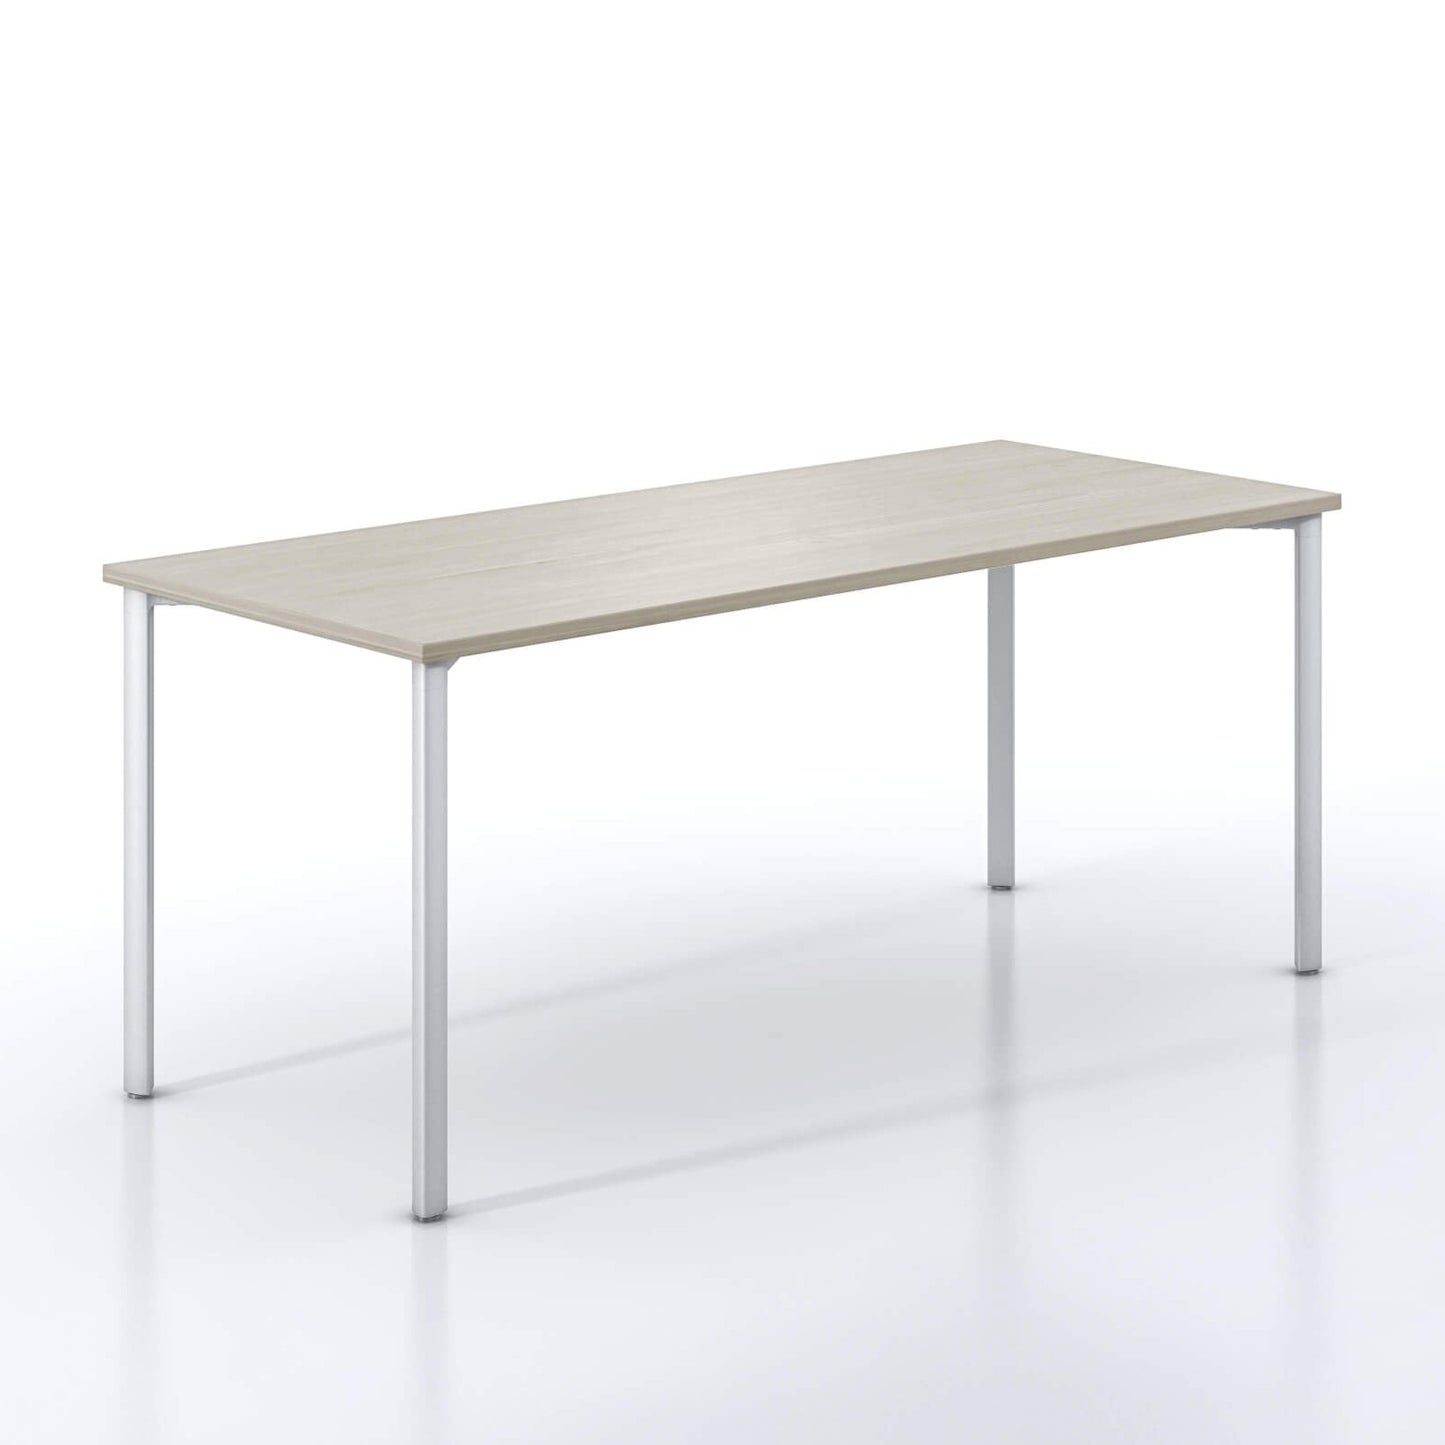 Essy Adjustable Table